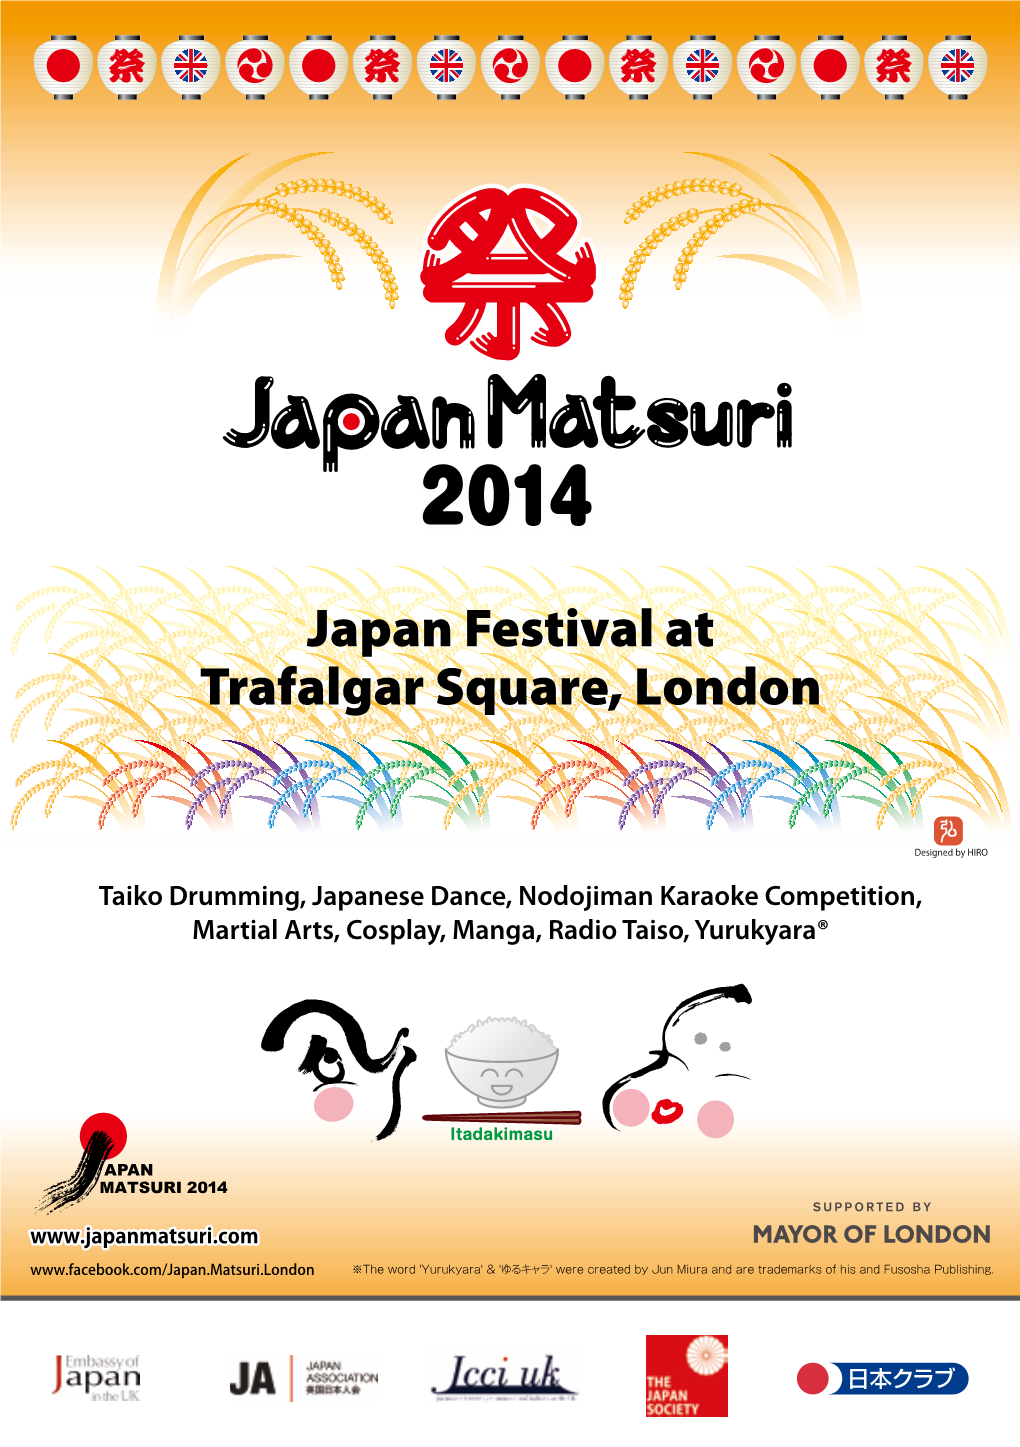 Japan Festival at Trafalgar Square, London